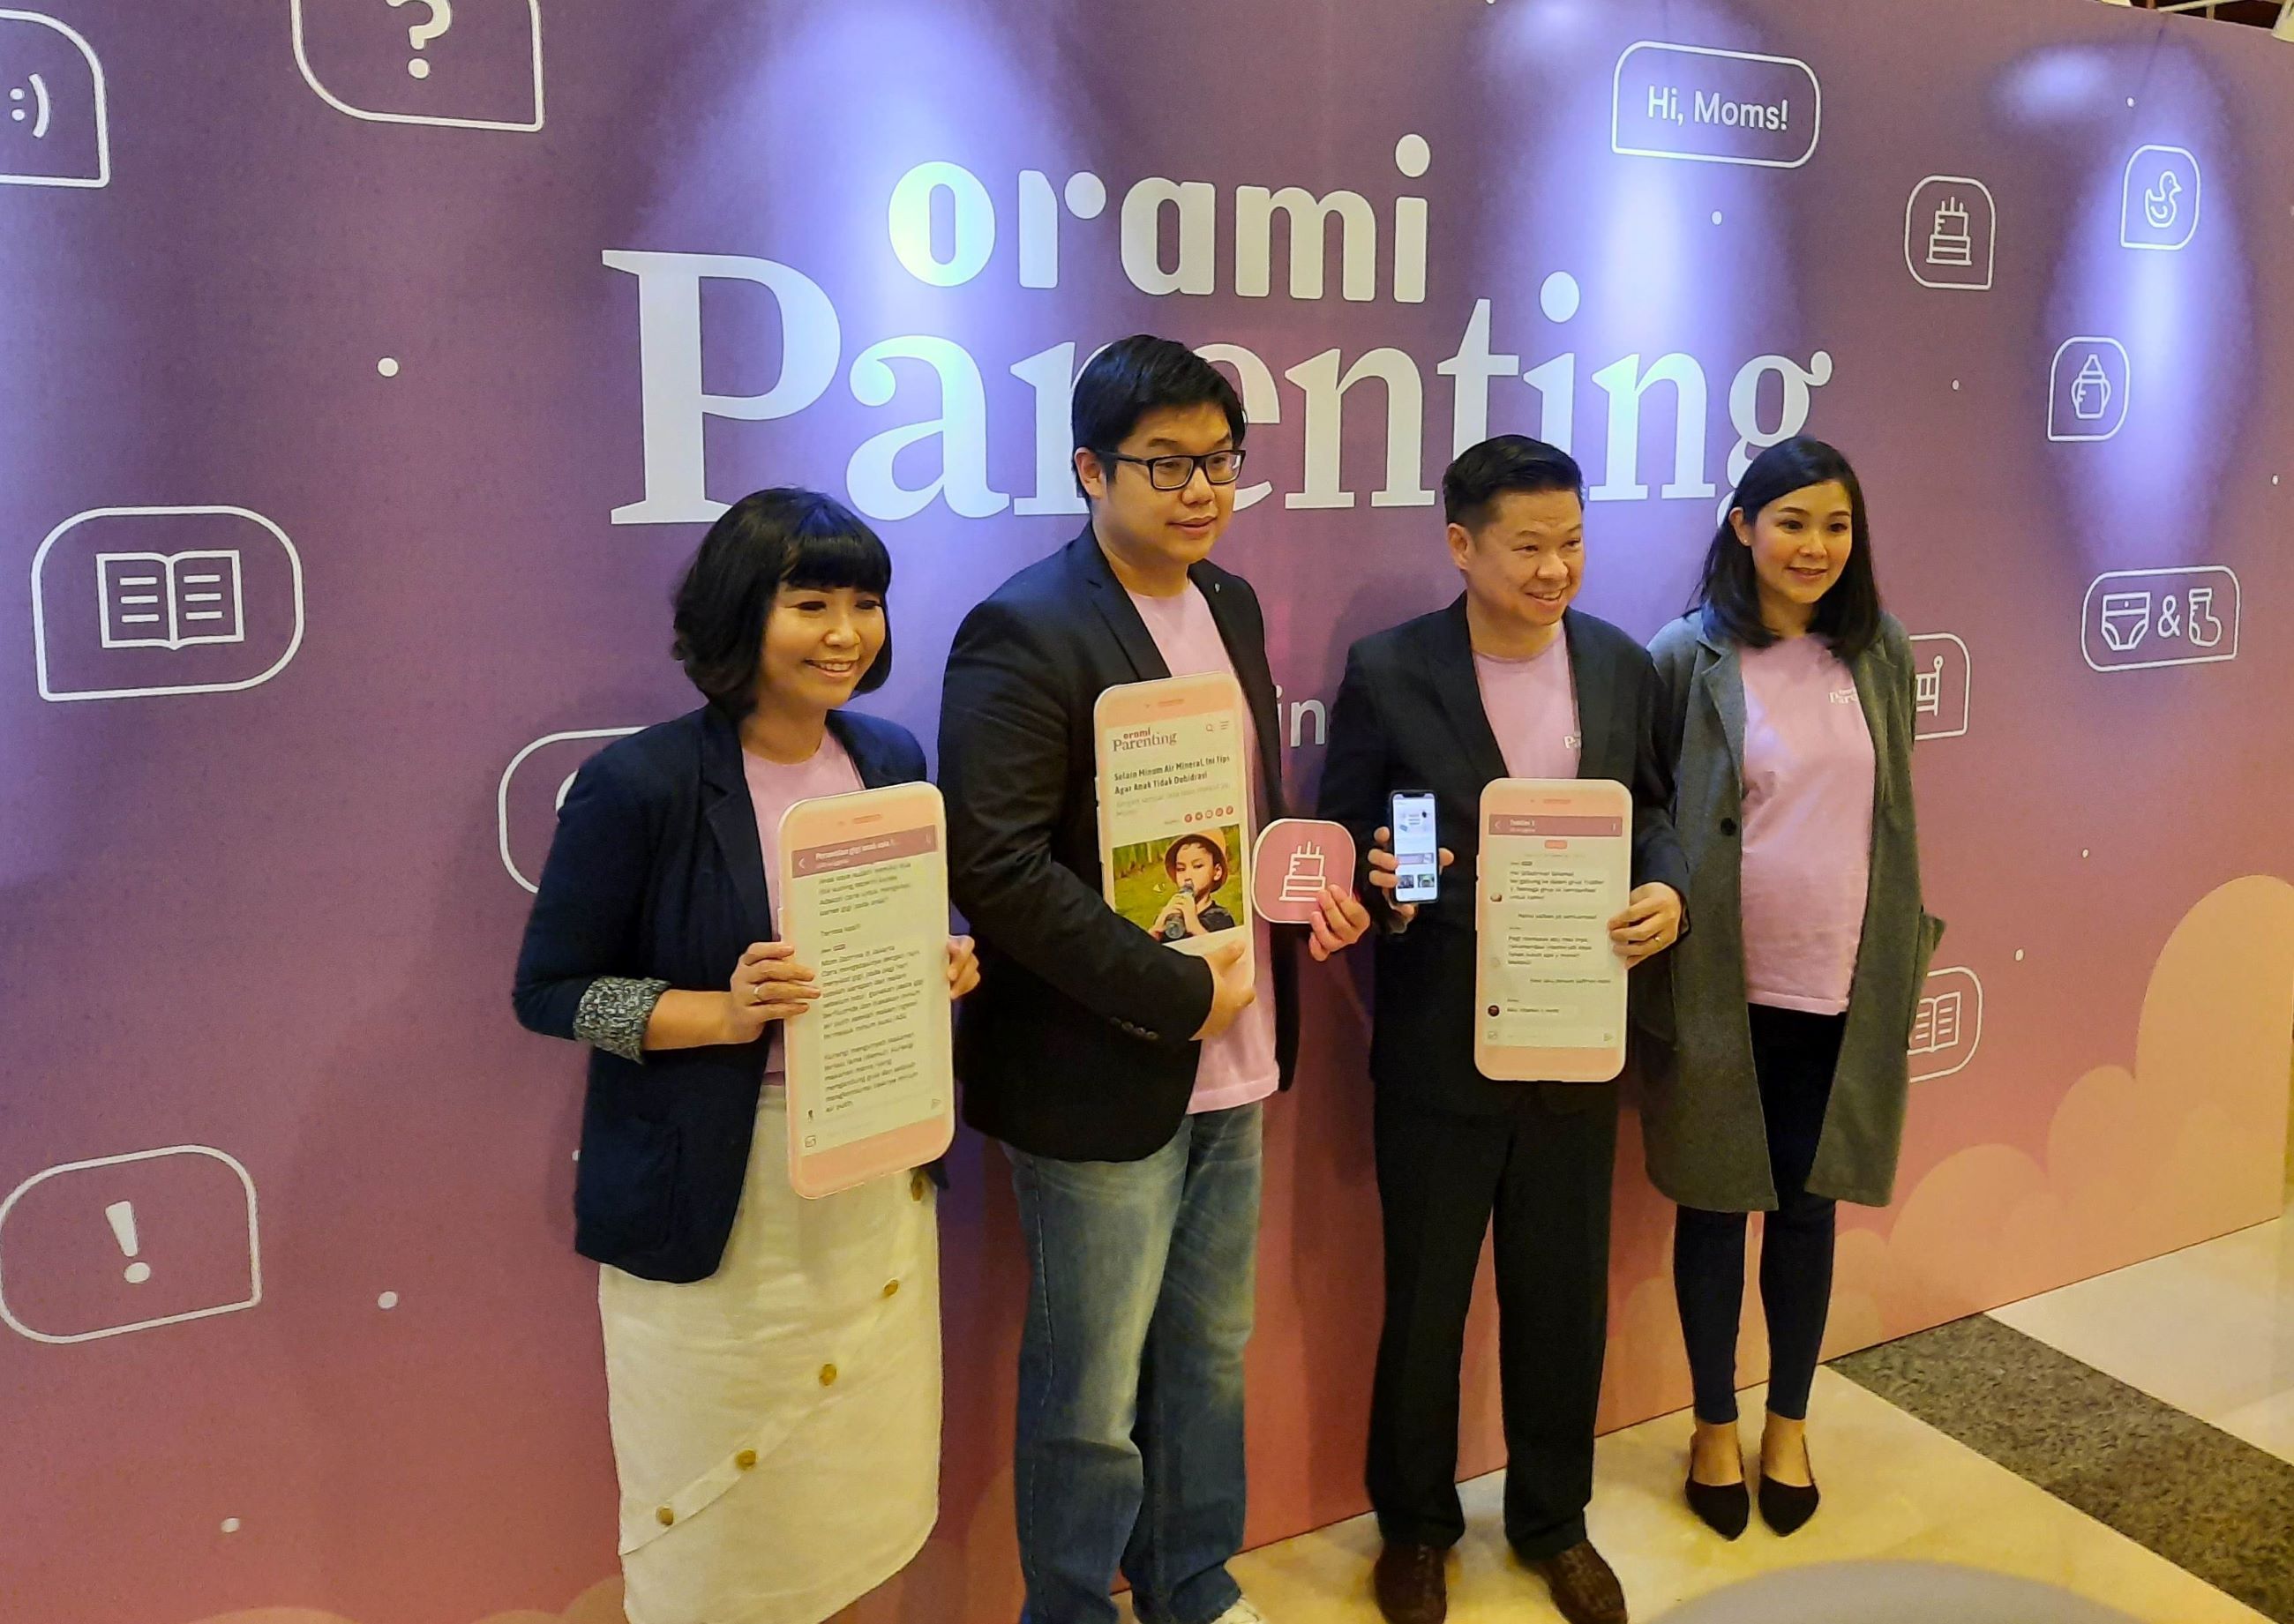 Indonesian e-commerce platform Orami launches parenting app